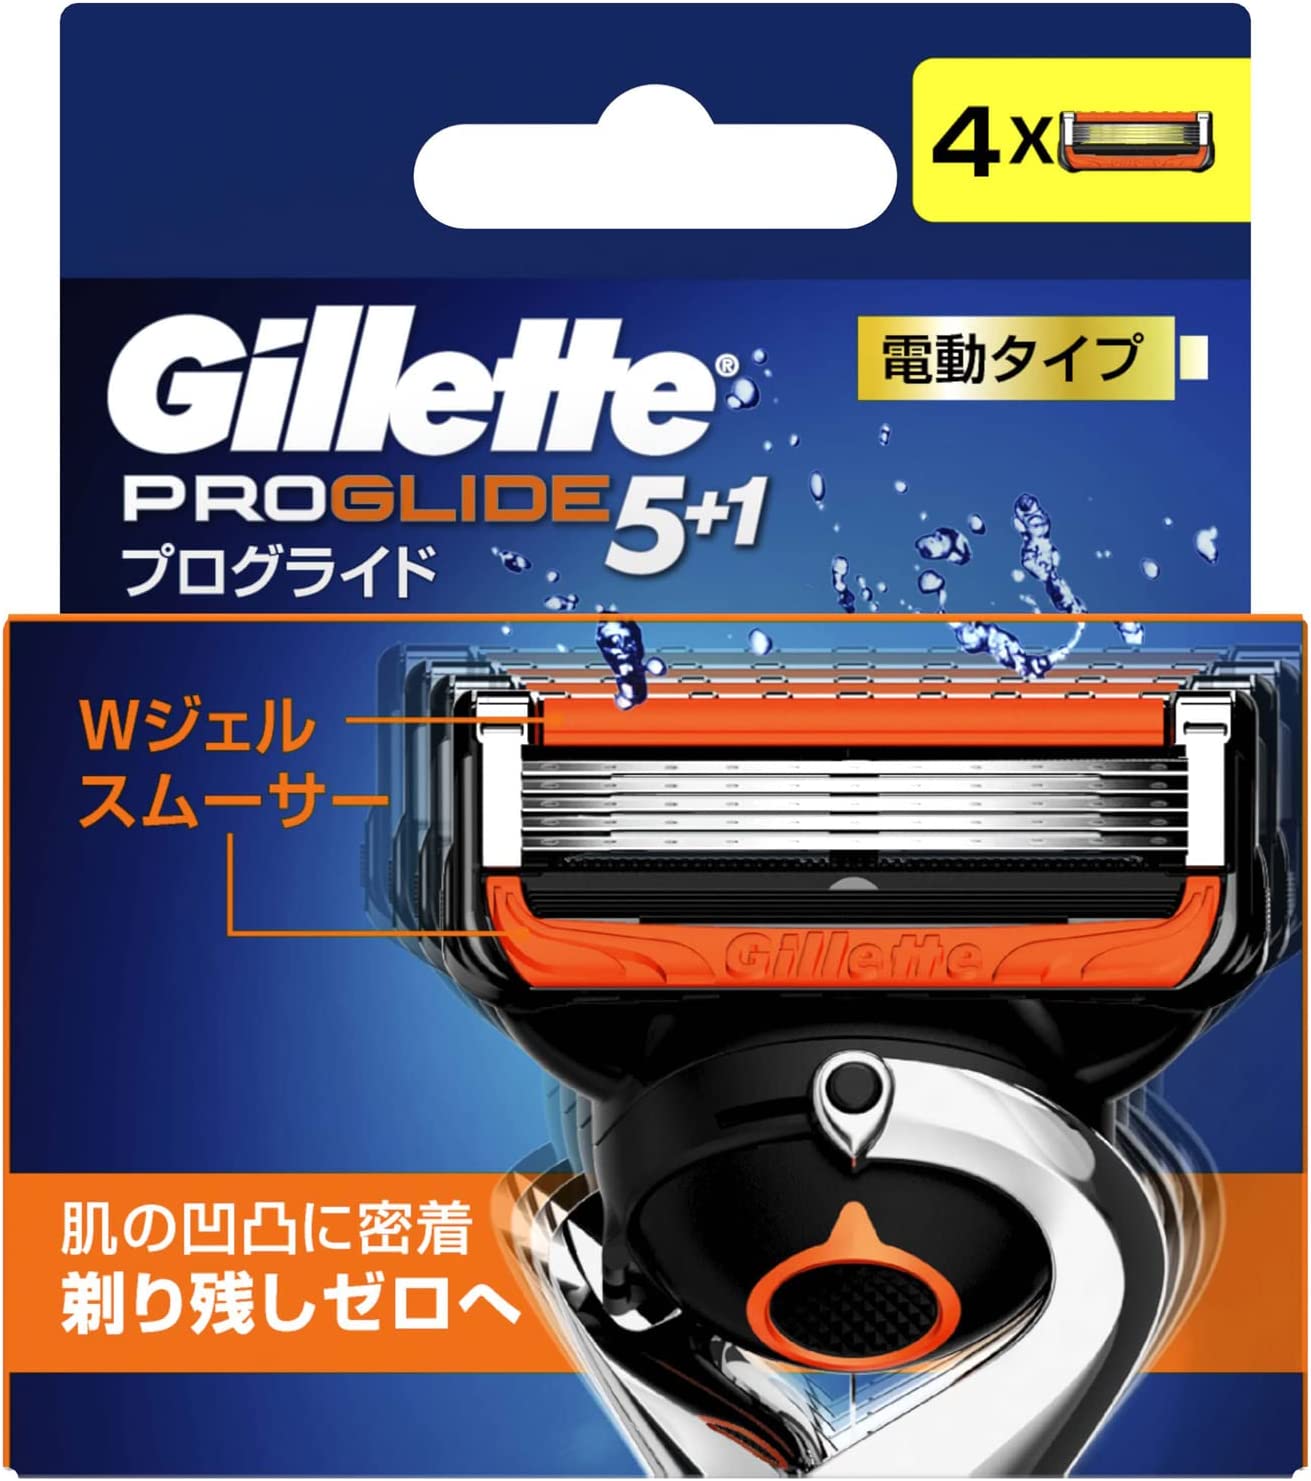 P&G Gillett 吉列 Gillette Proglide電型替換刀片4件